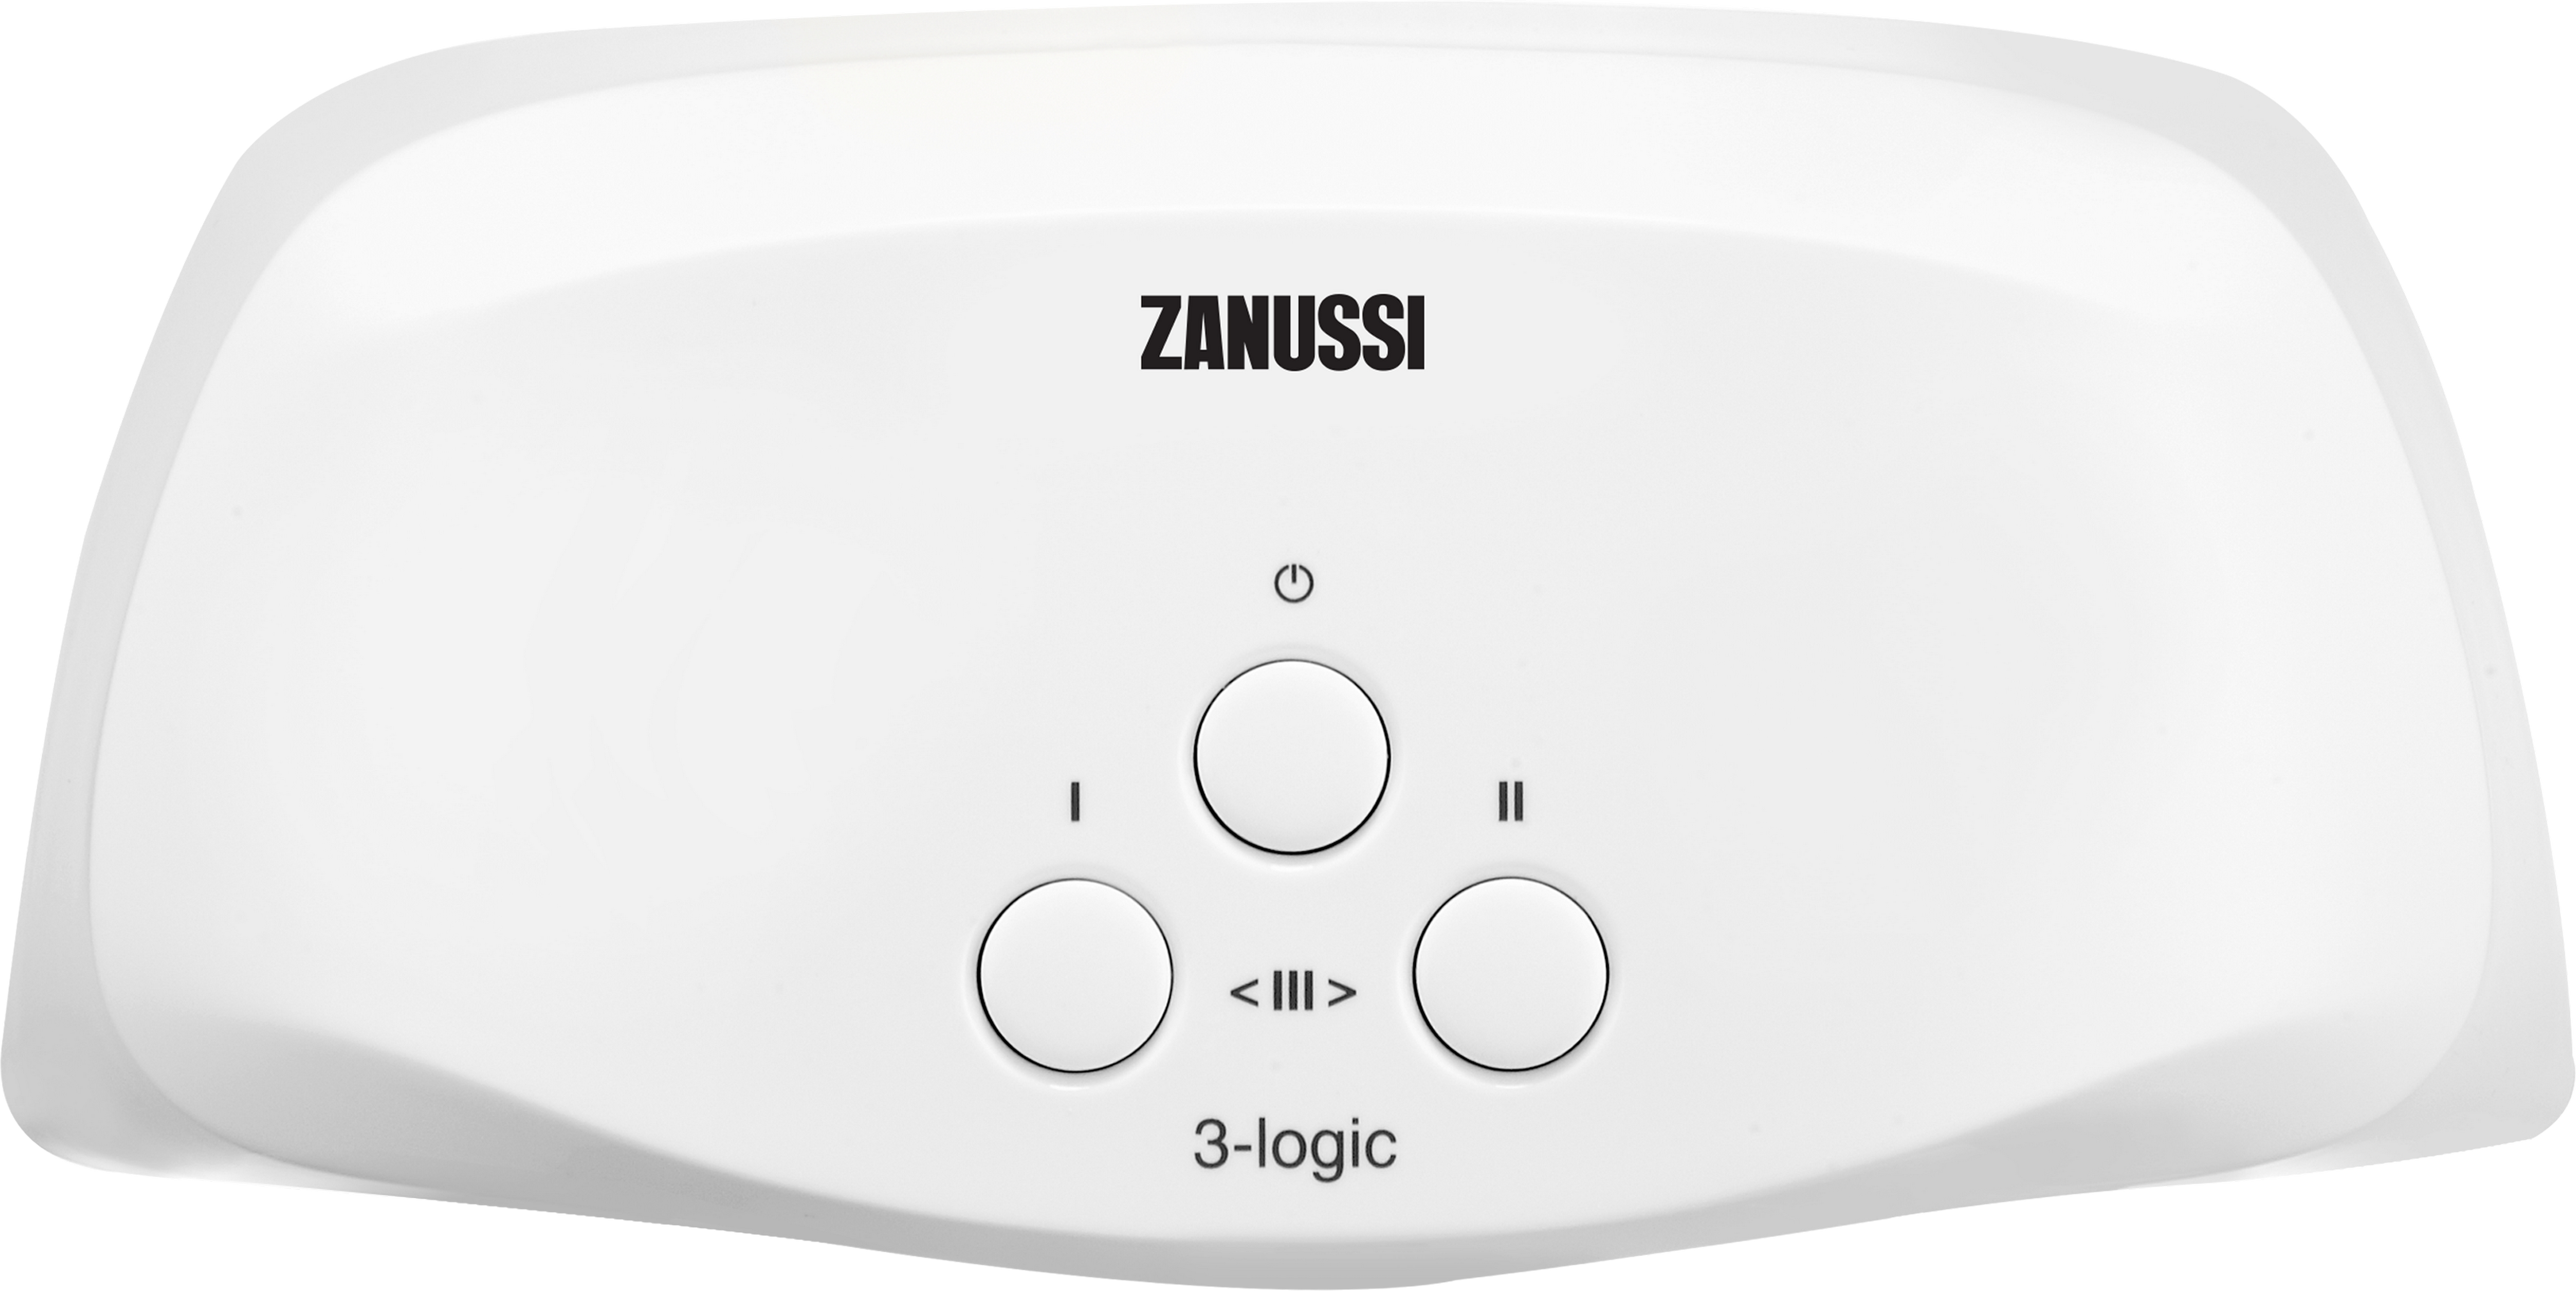 Проточный водонагреватель Zanussi 3-logic T (5,5 кВт) в интернет-магазине, главное фото